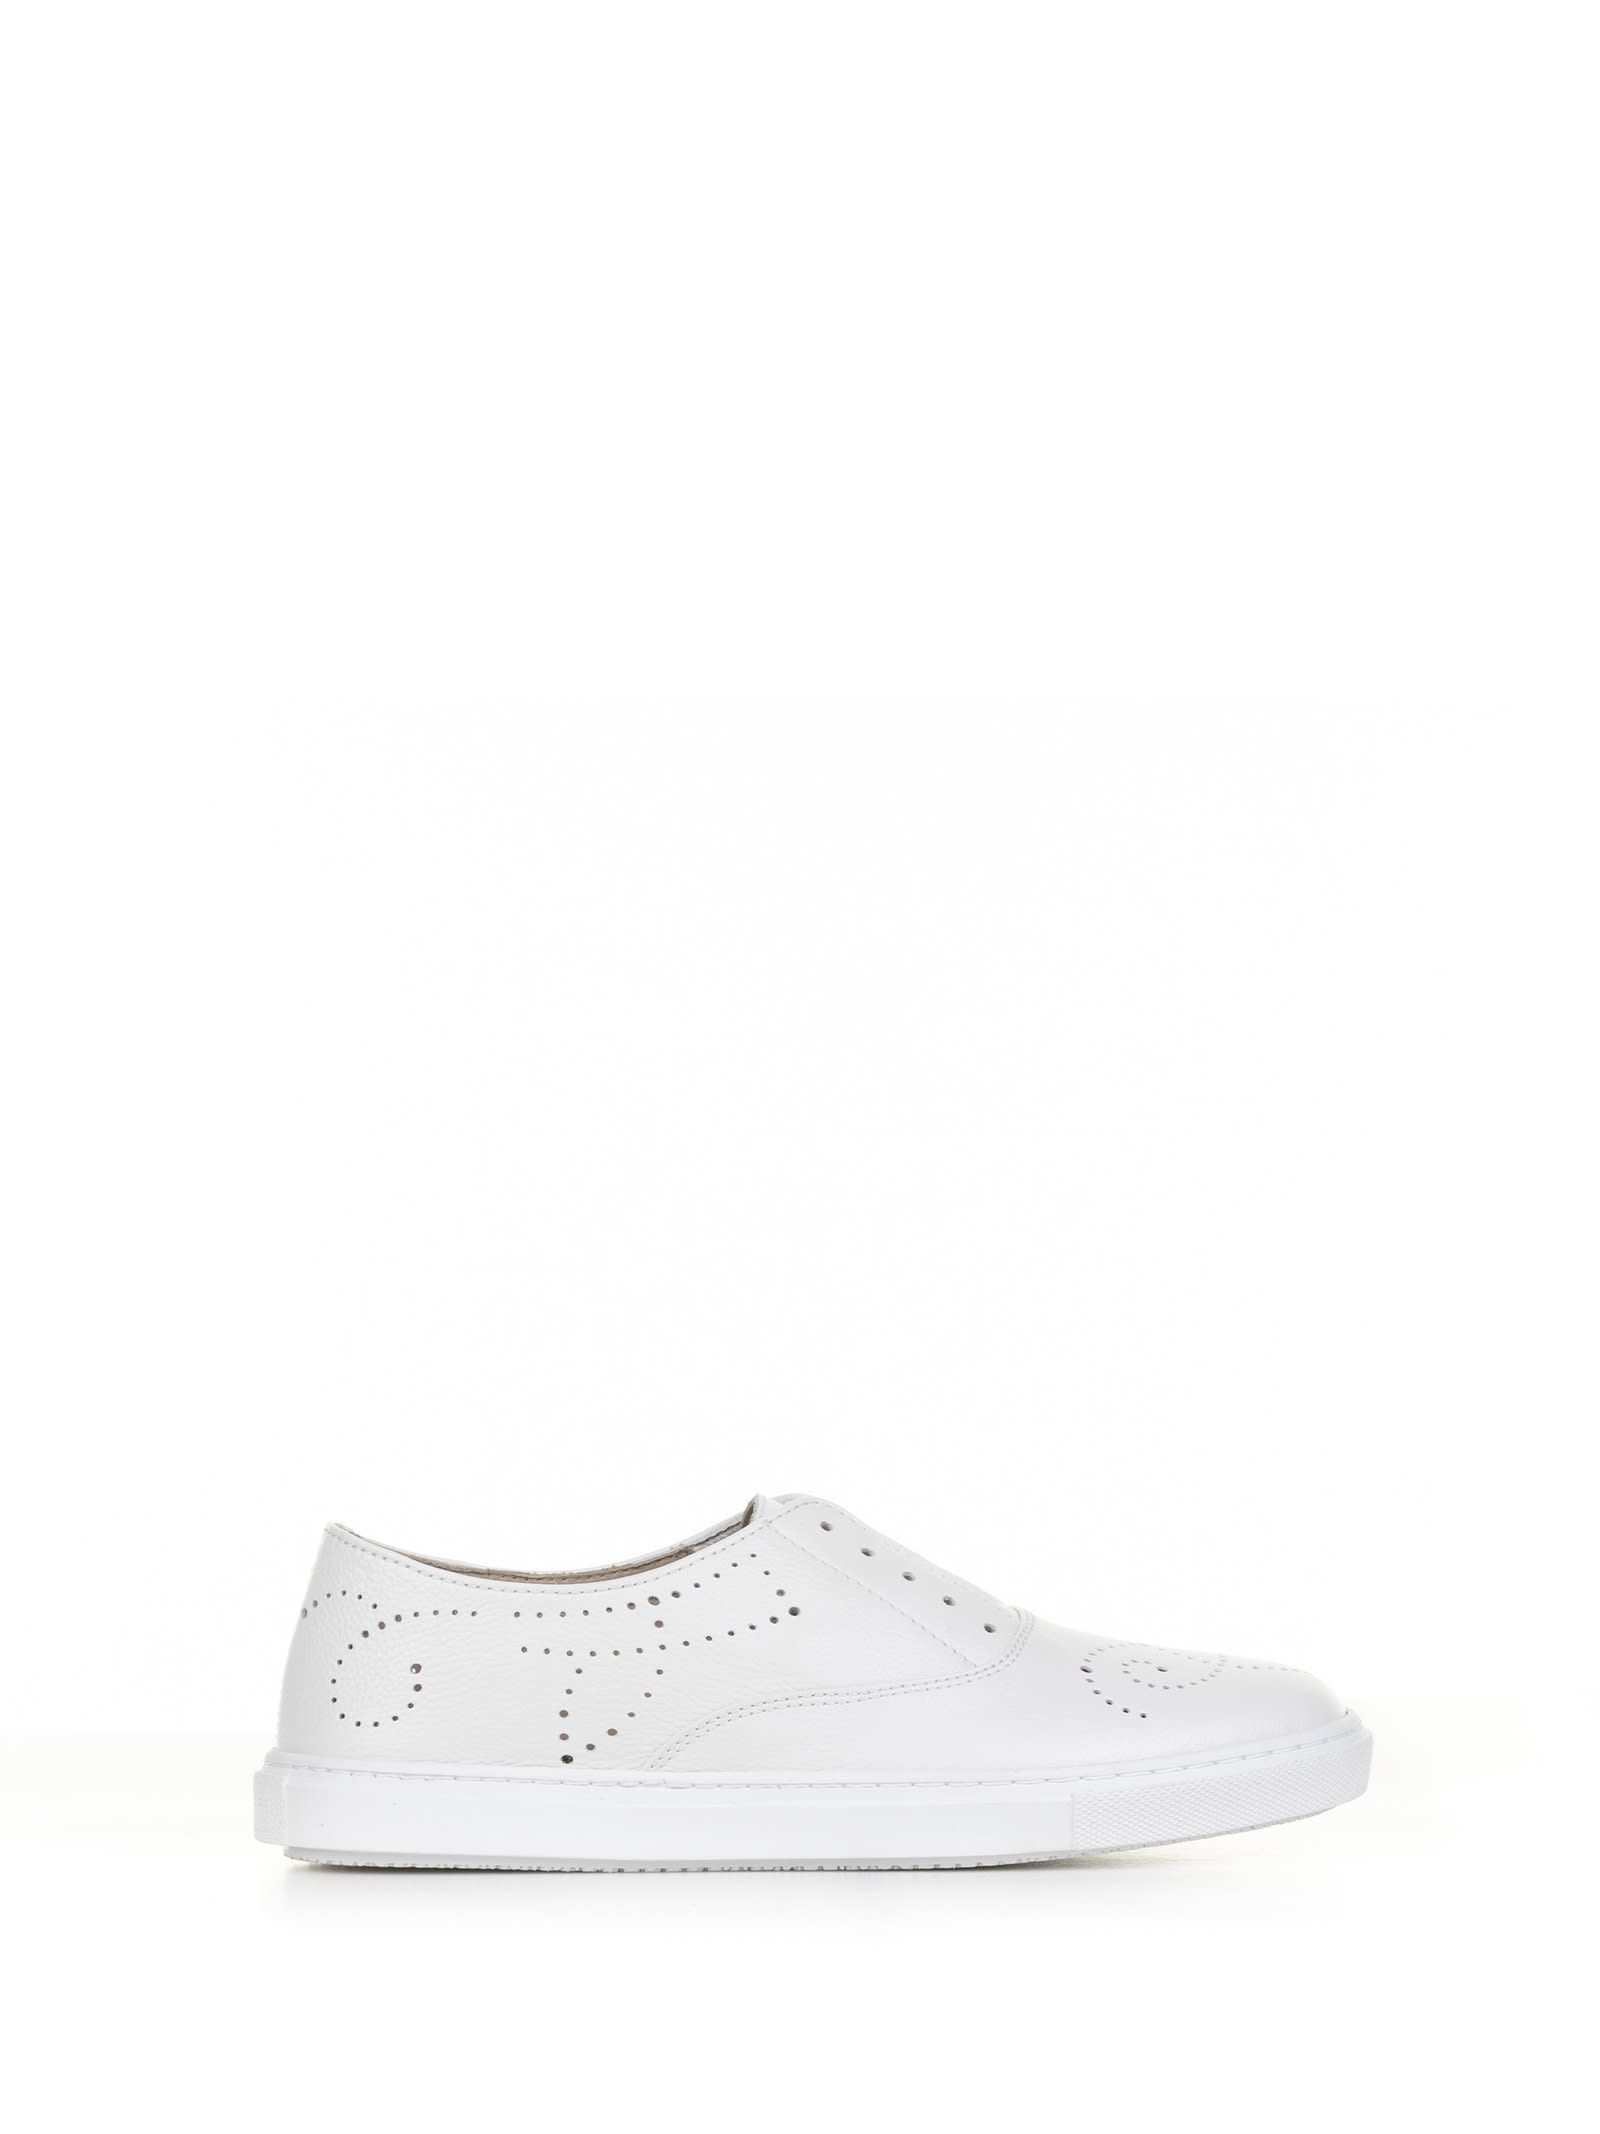 White Leather Slip-on Sneaker